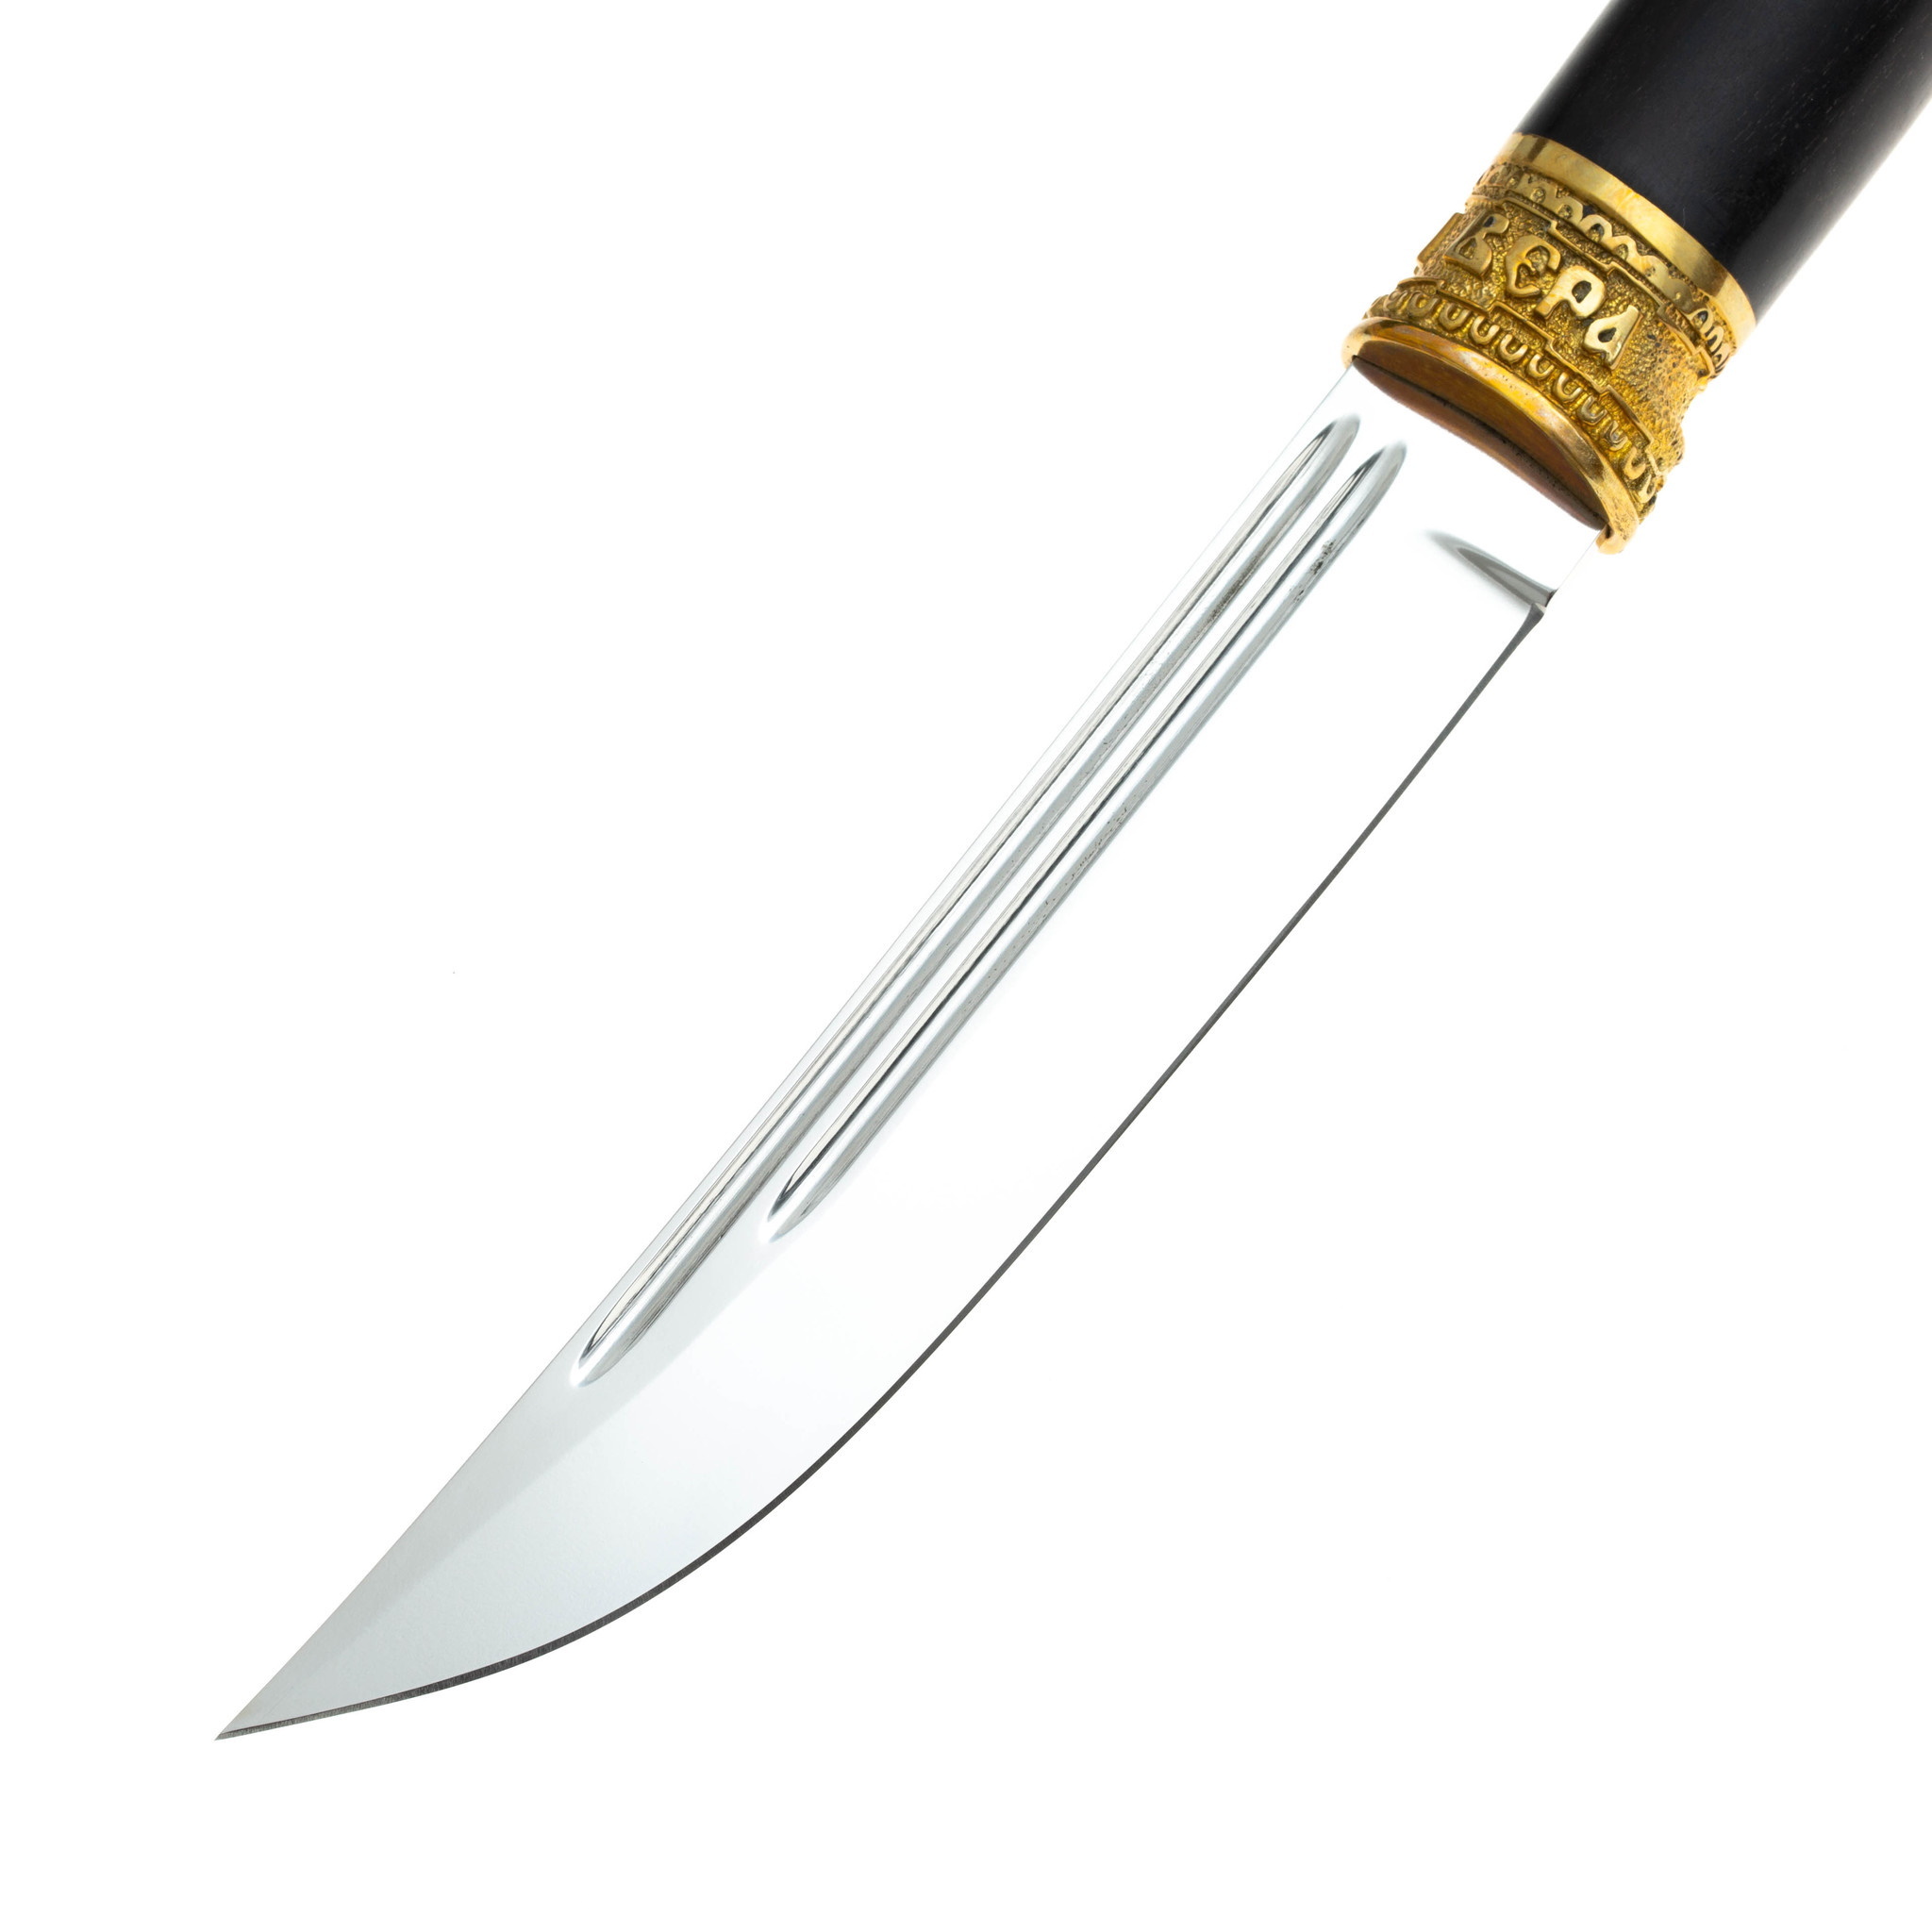 Нож Казацкий Засапожный, сталь 110х18, рукоять граб - фото 2